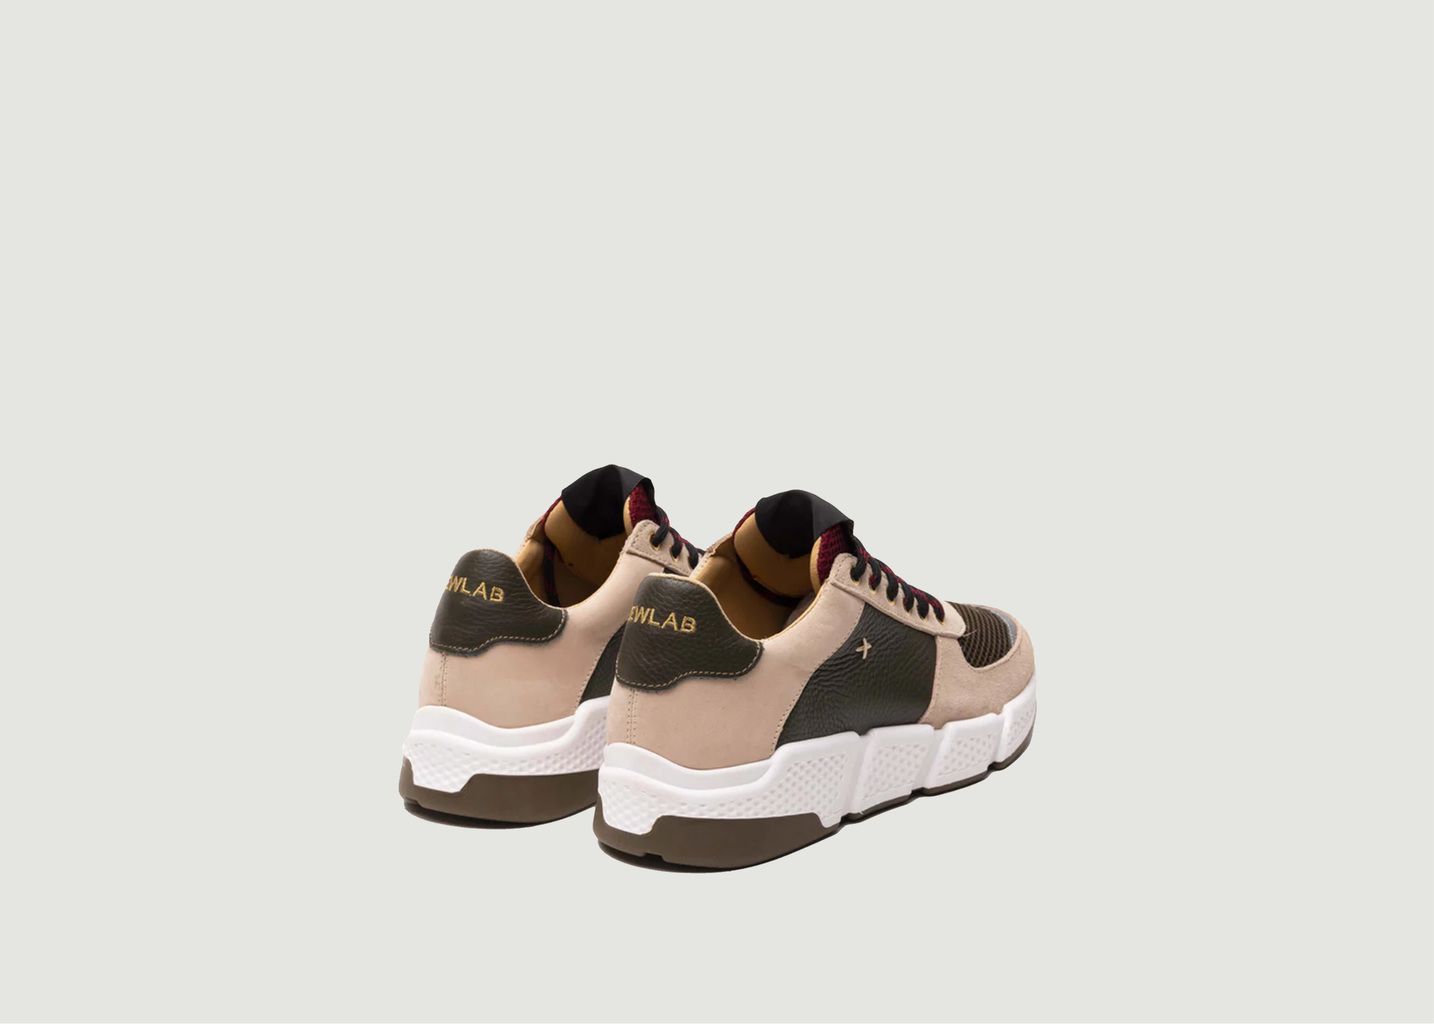 Cooper Sneakers - Newlab